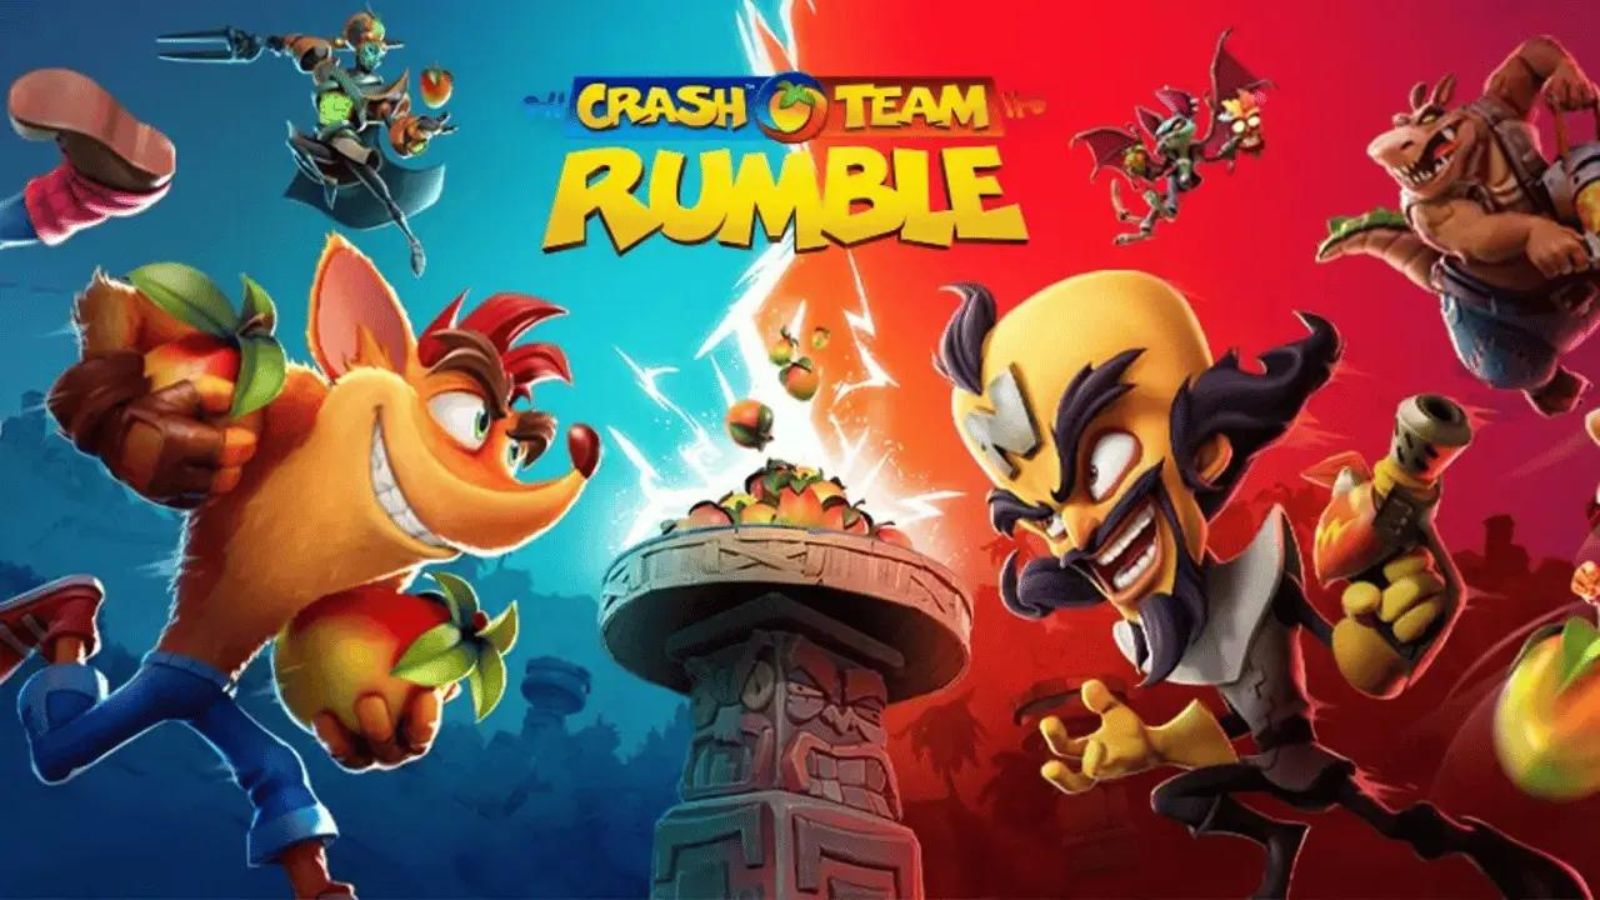 بازی Crash Team Rumble Deluxe Edition برای PS5